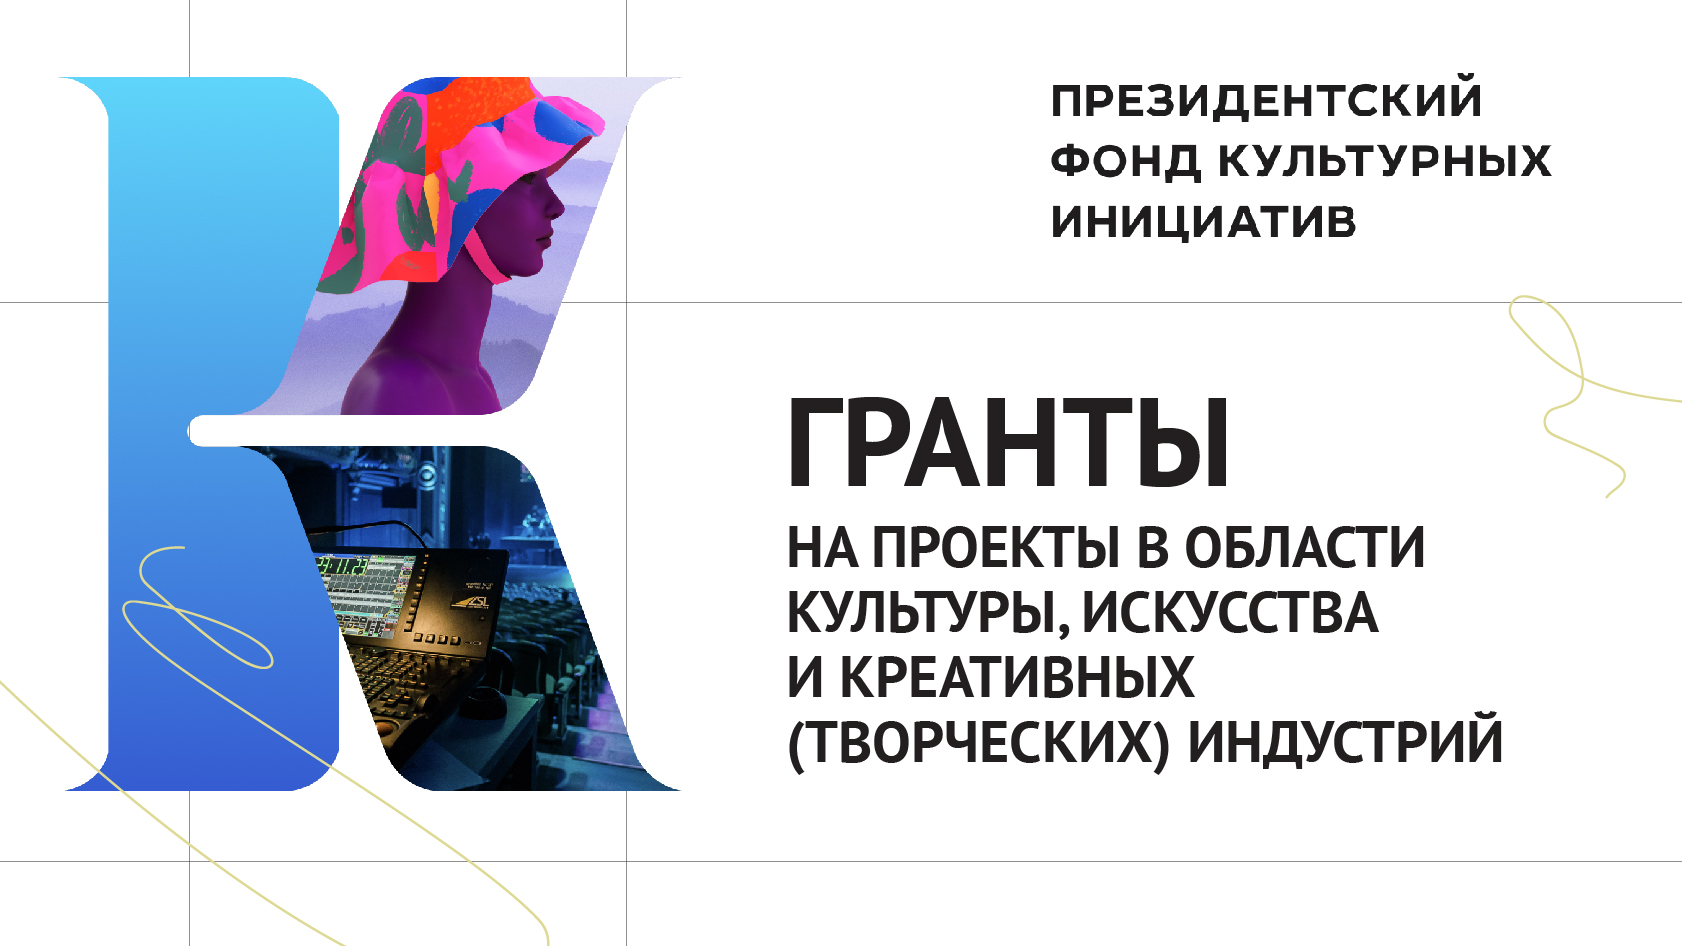 Три ульяновских учреждения культуры победили в конкурсе грантов Президентского фонда культурных инициатив.